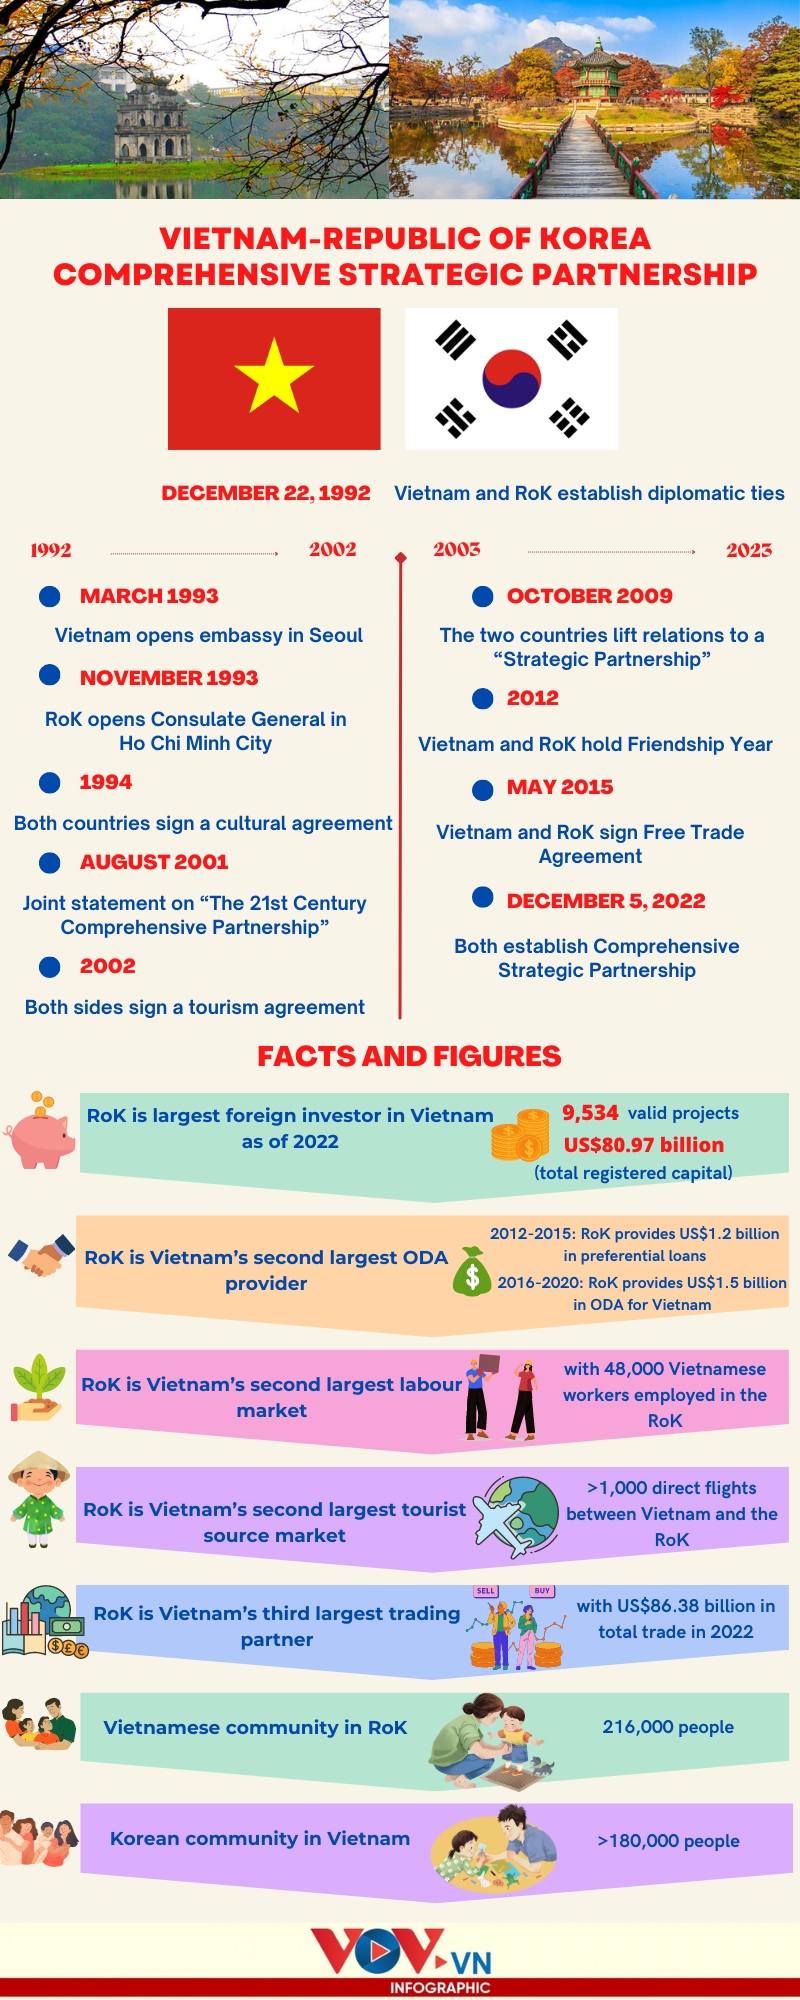 significant milestones in vietnam-rok partnership picture 1